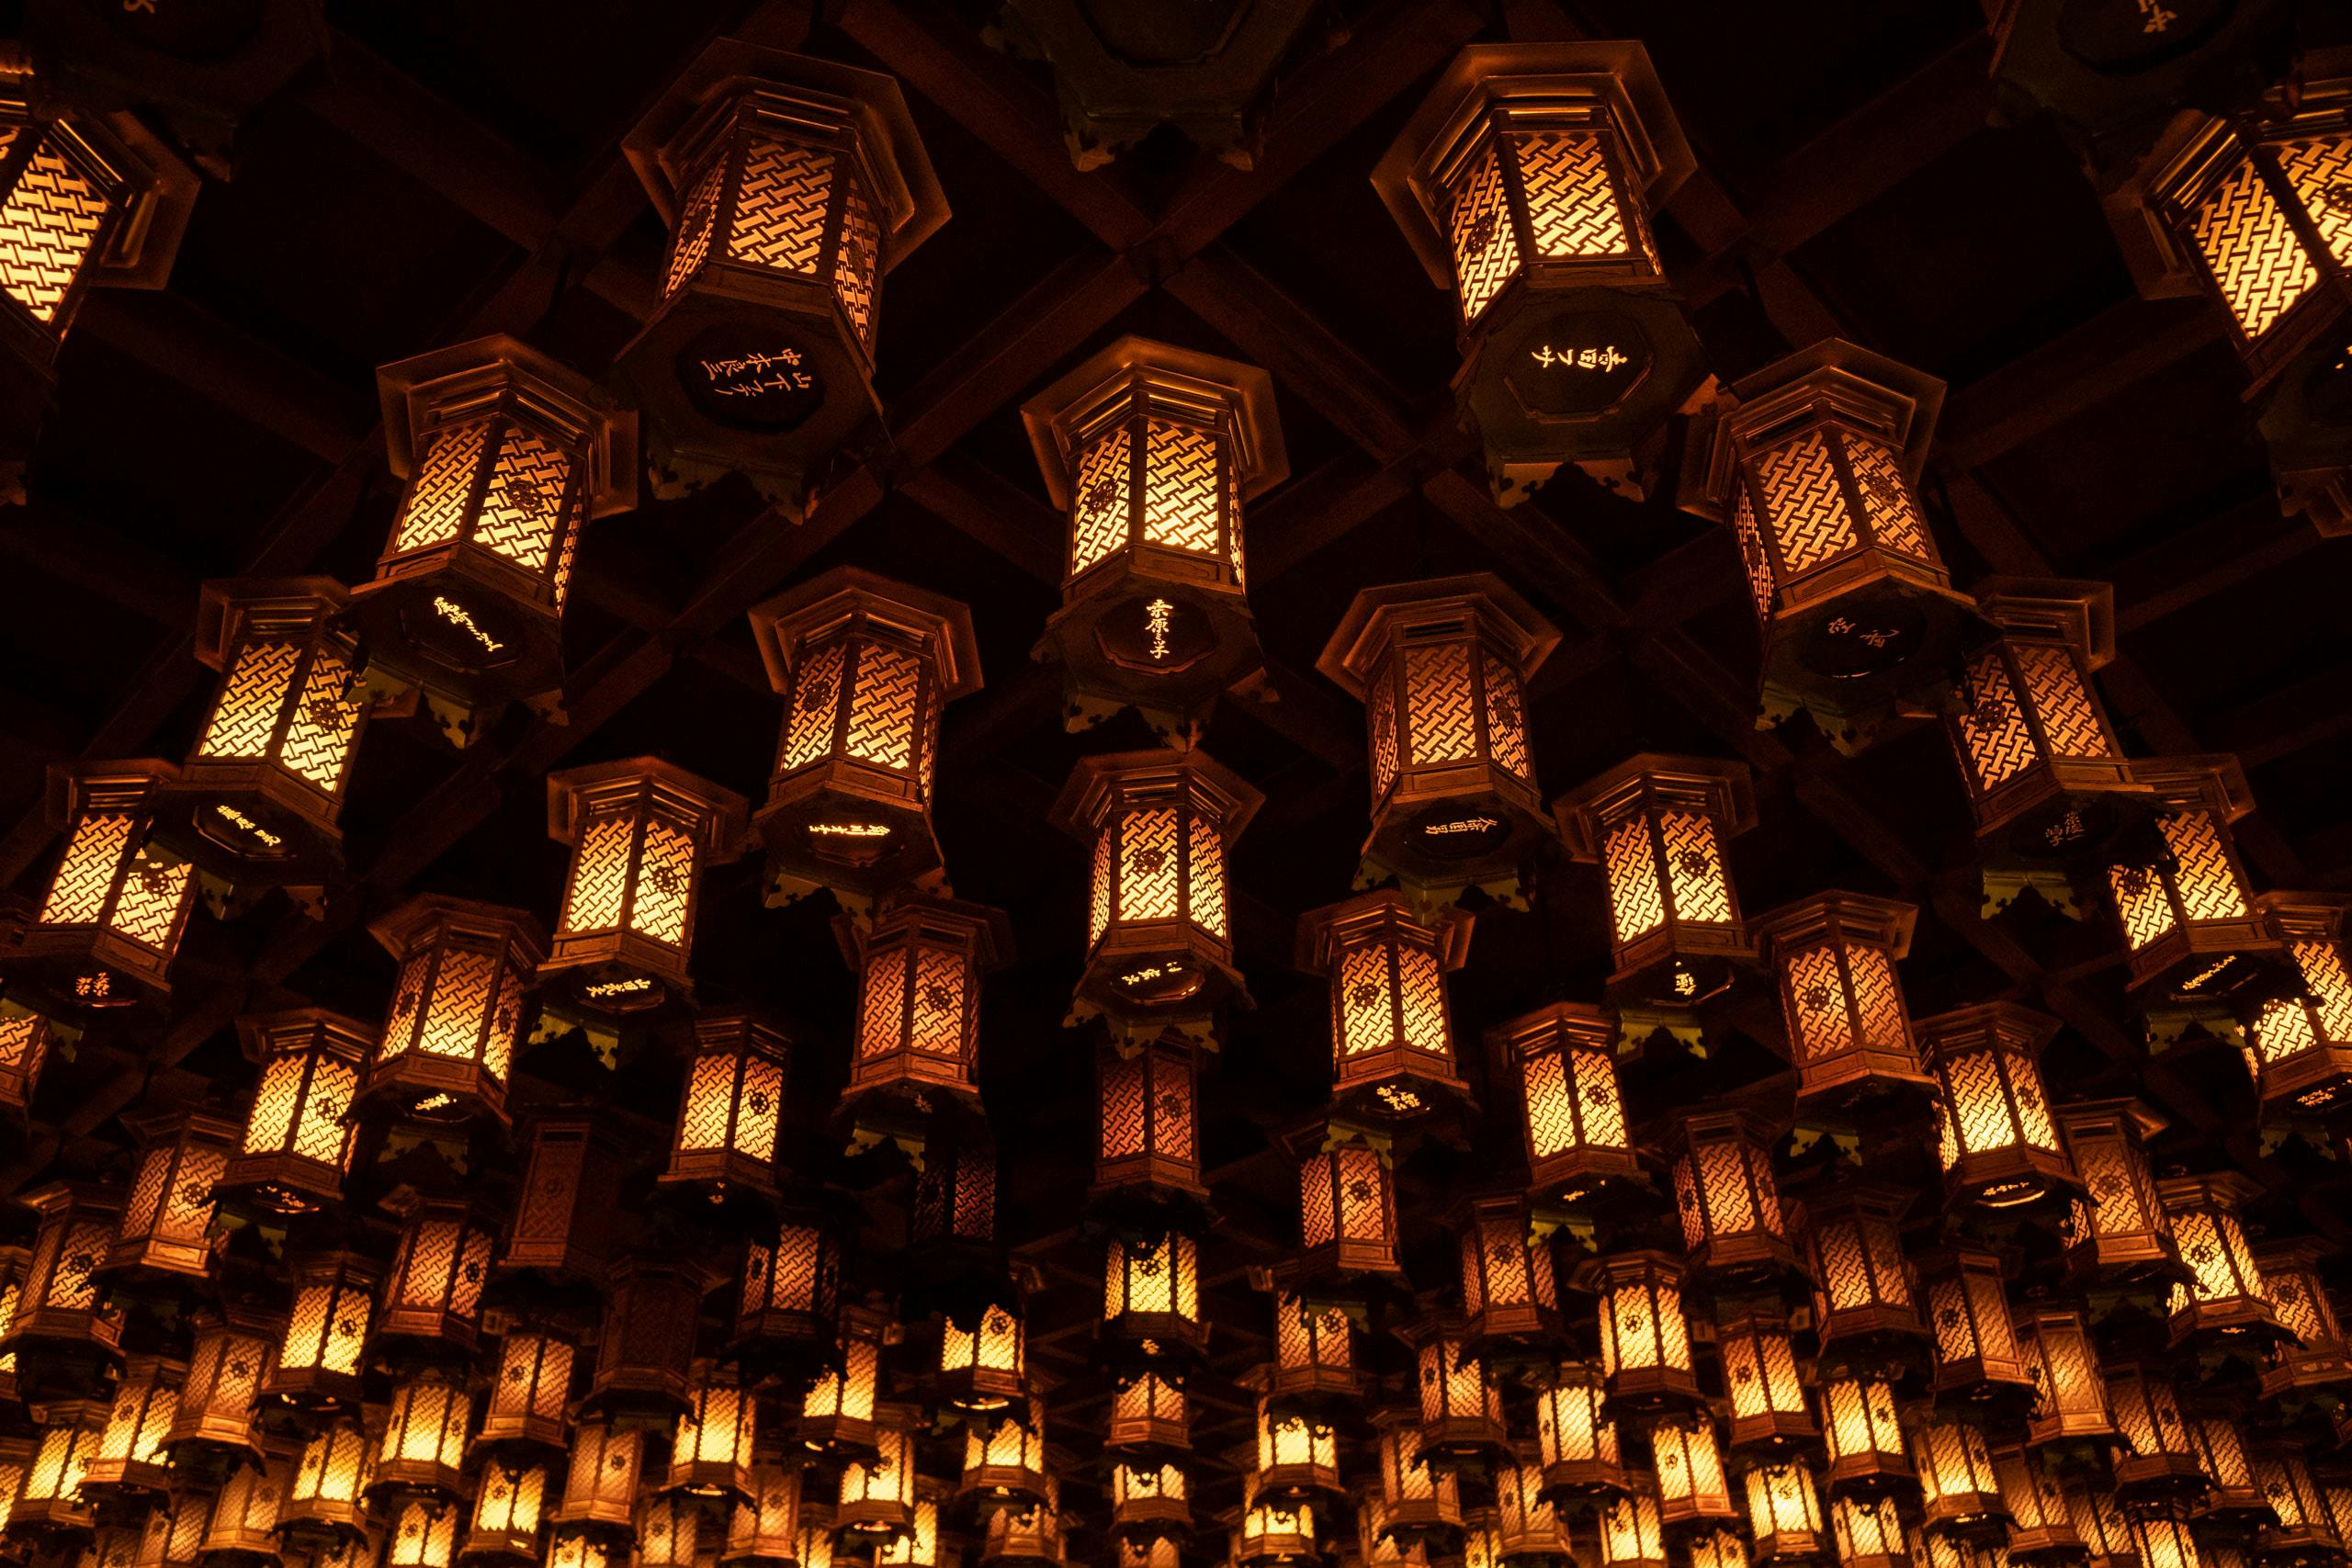 Hanging lanterns